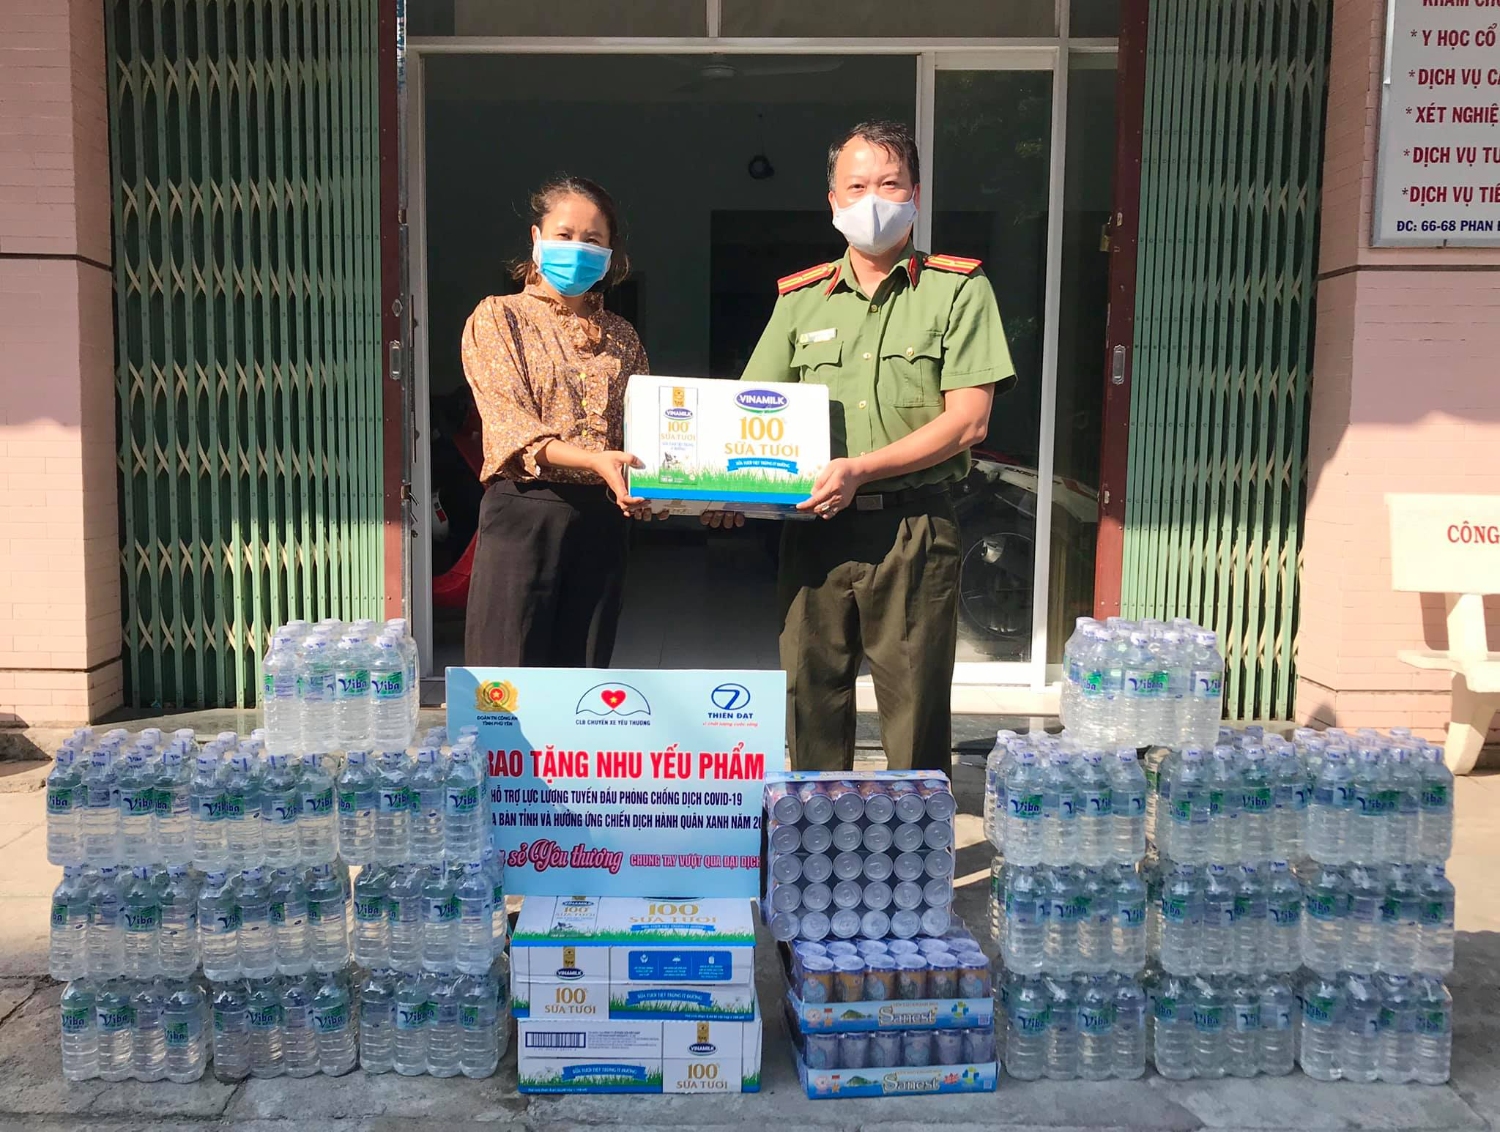 Đoàn thanh niên Công an tỉnh tặng nhu yếu phẩm cho các y bác sỹ tại Trung tâm Y tế thành phố Tuy Hòa